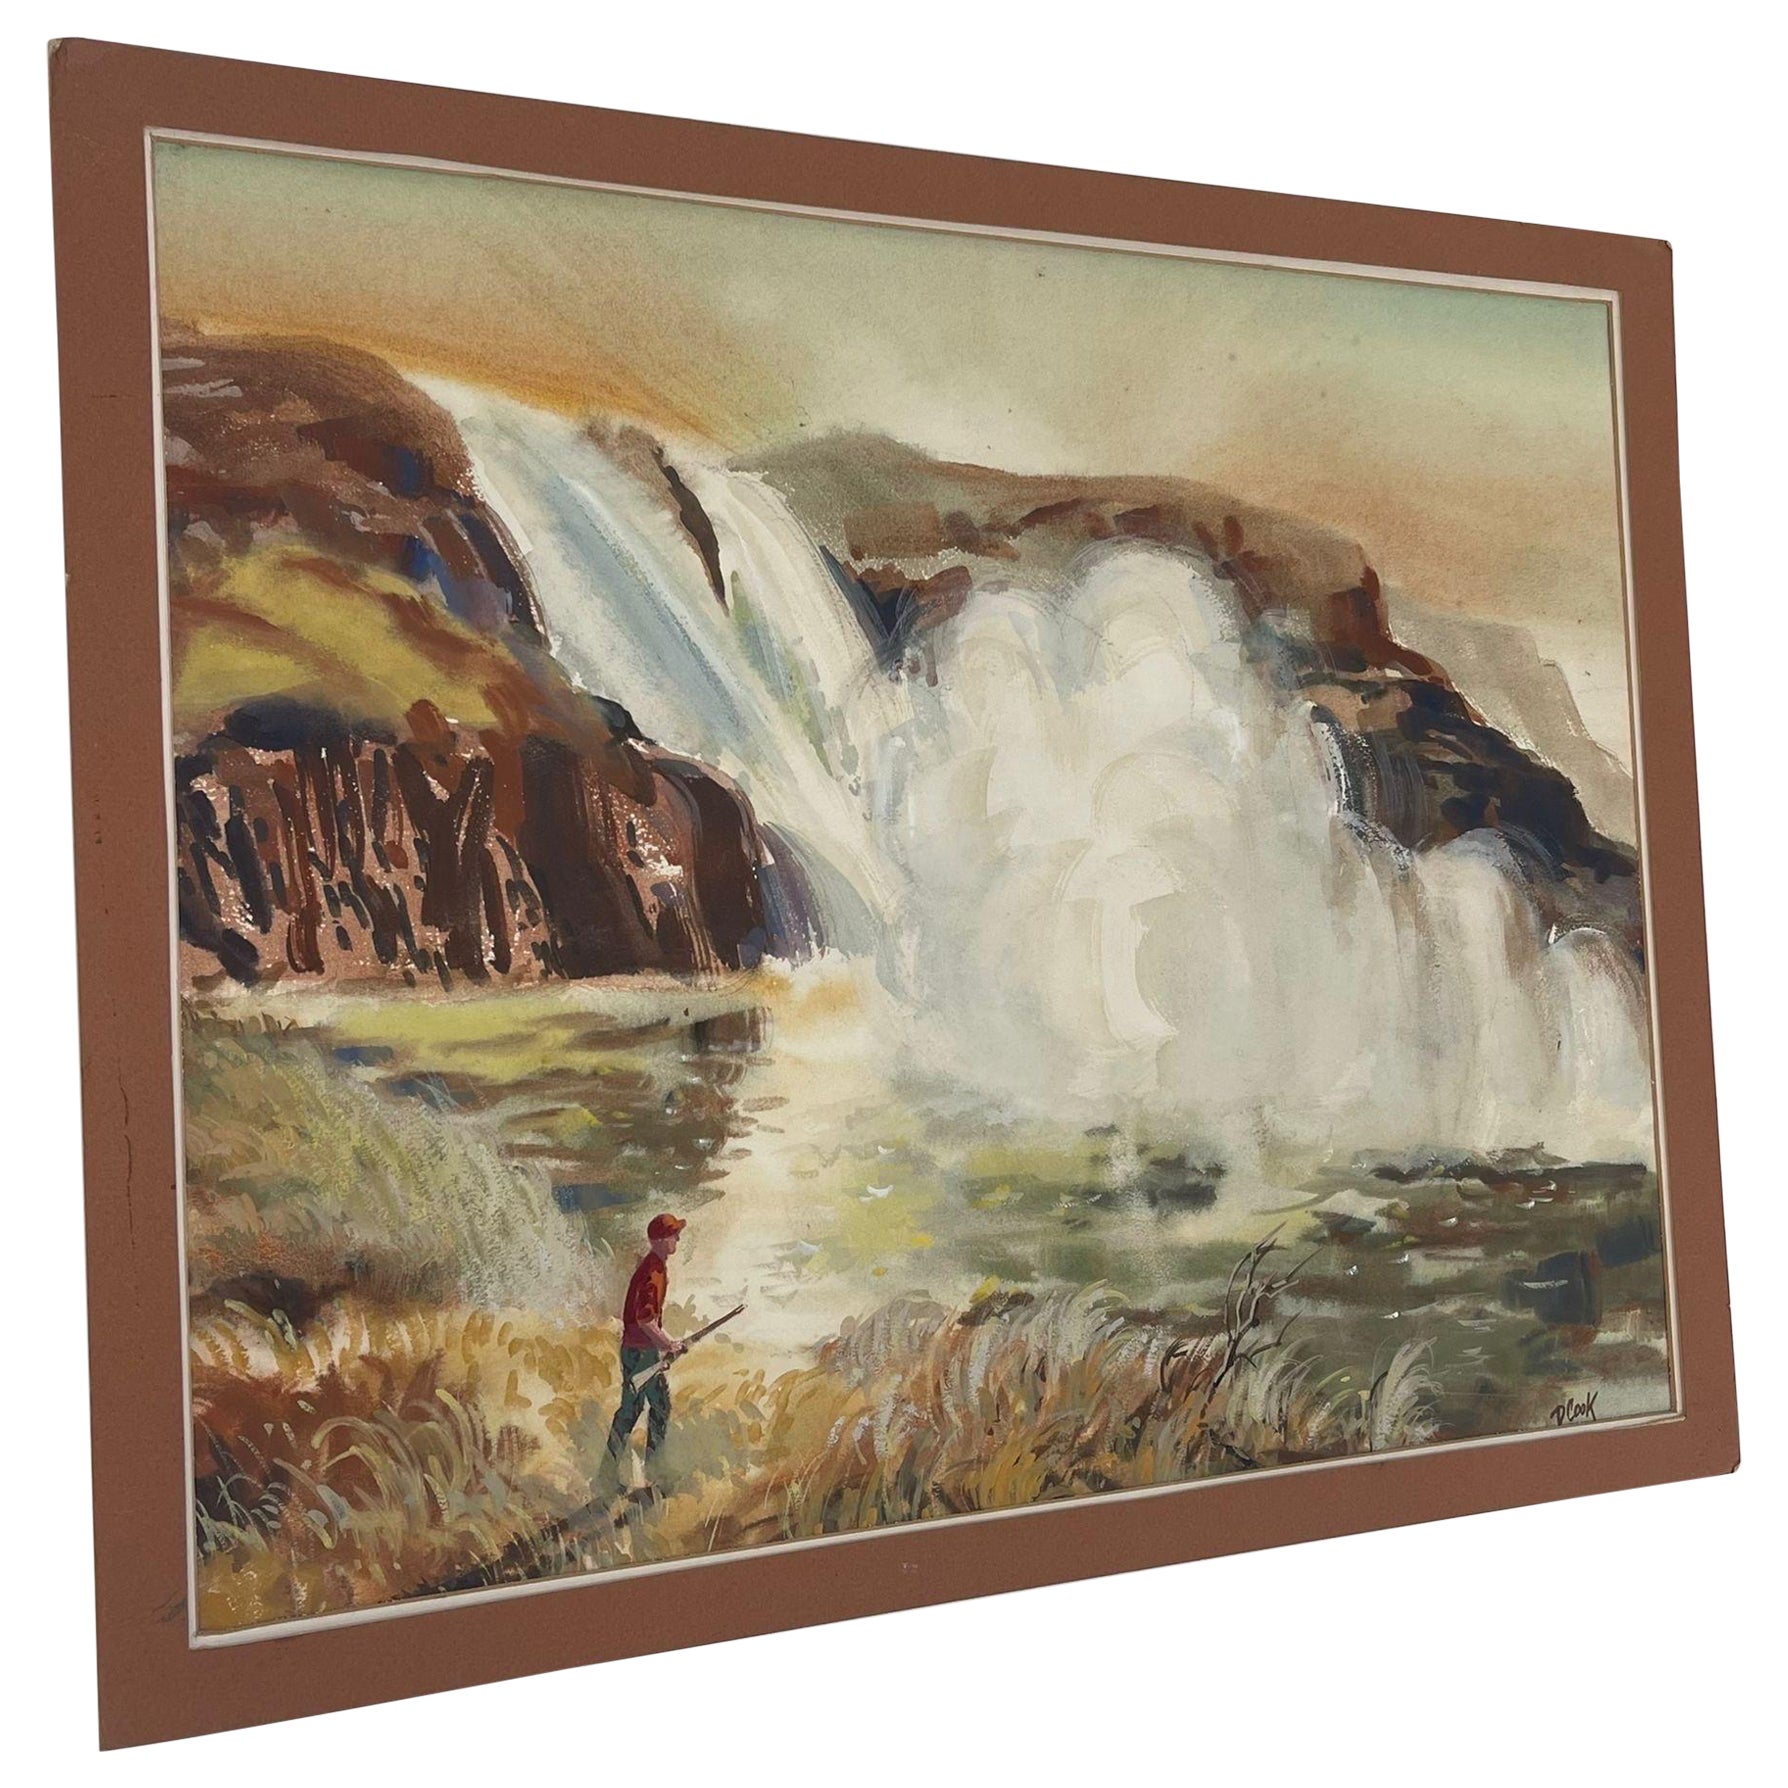 Signiertes Vintage-Kunstwerk mit Wasserfall und Jäger-Landschaft.